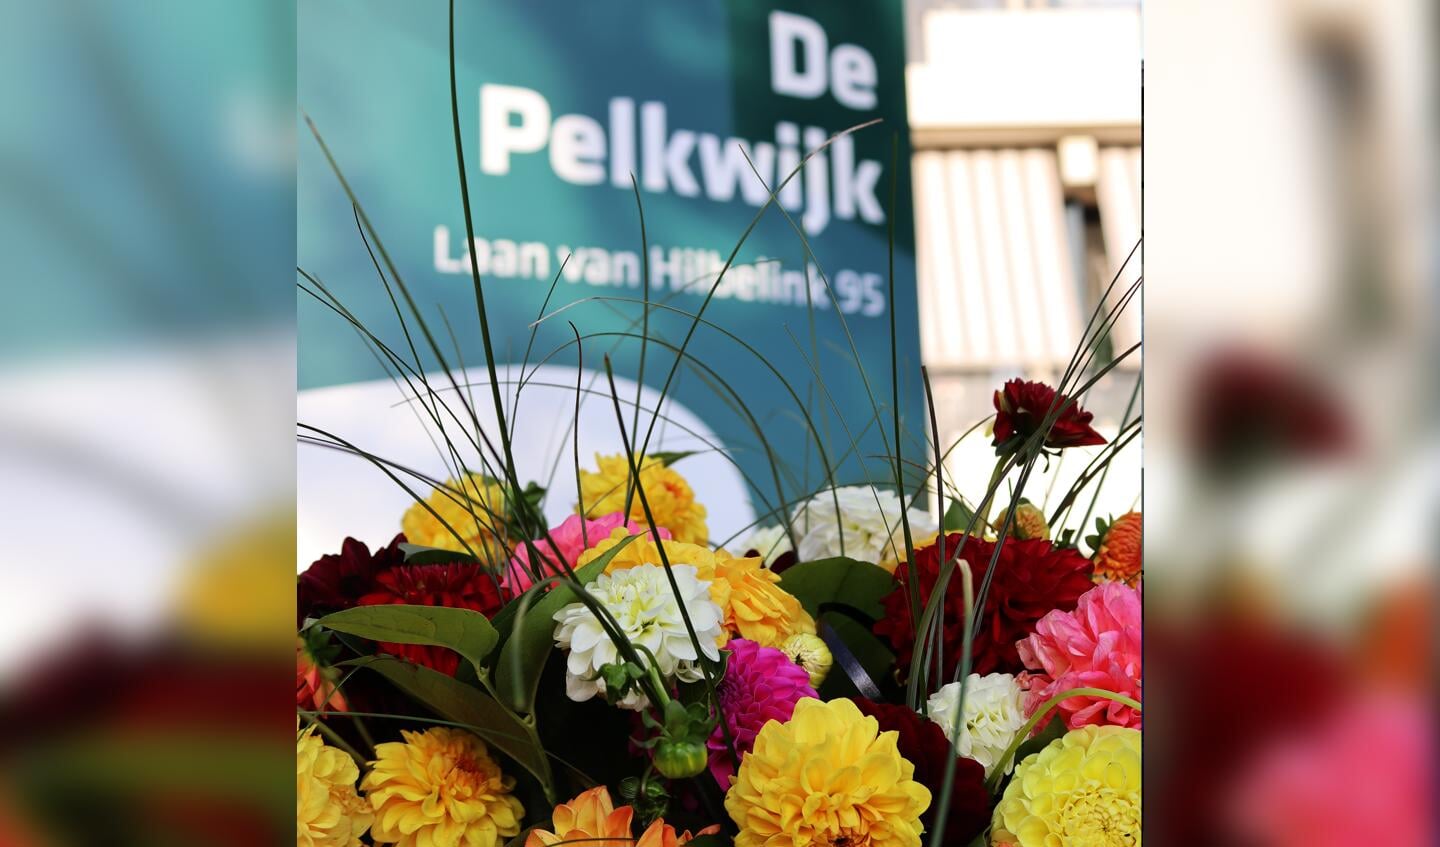 Ook waren er bloemen voor de bewoners en medewerkers van De Pelkwijk. Foto: PR